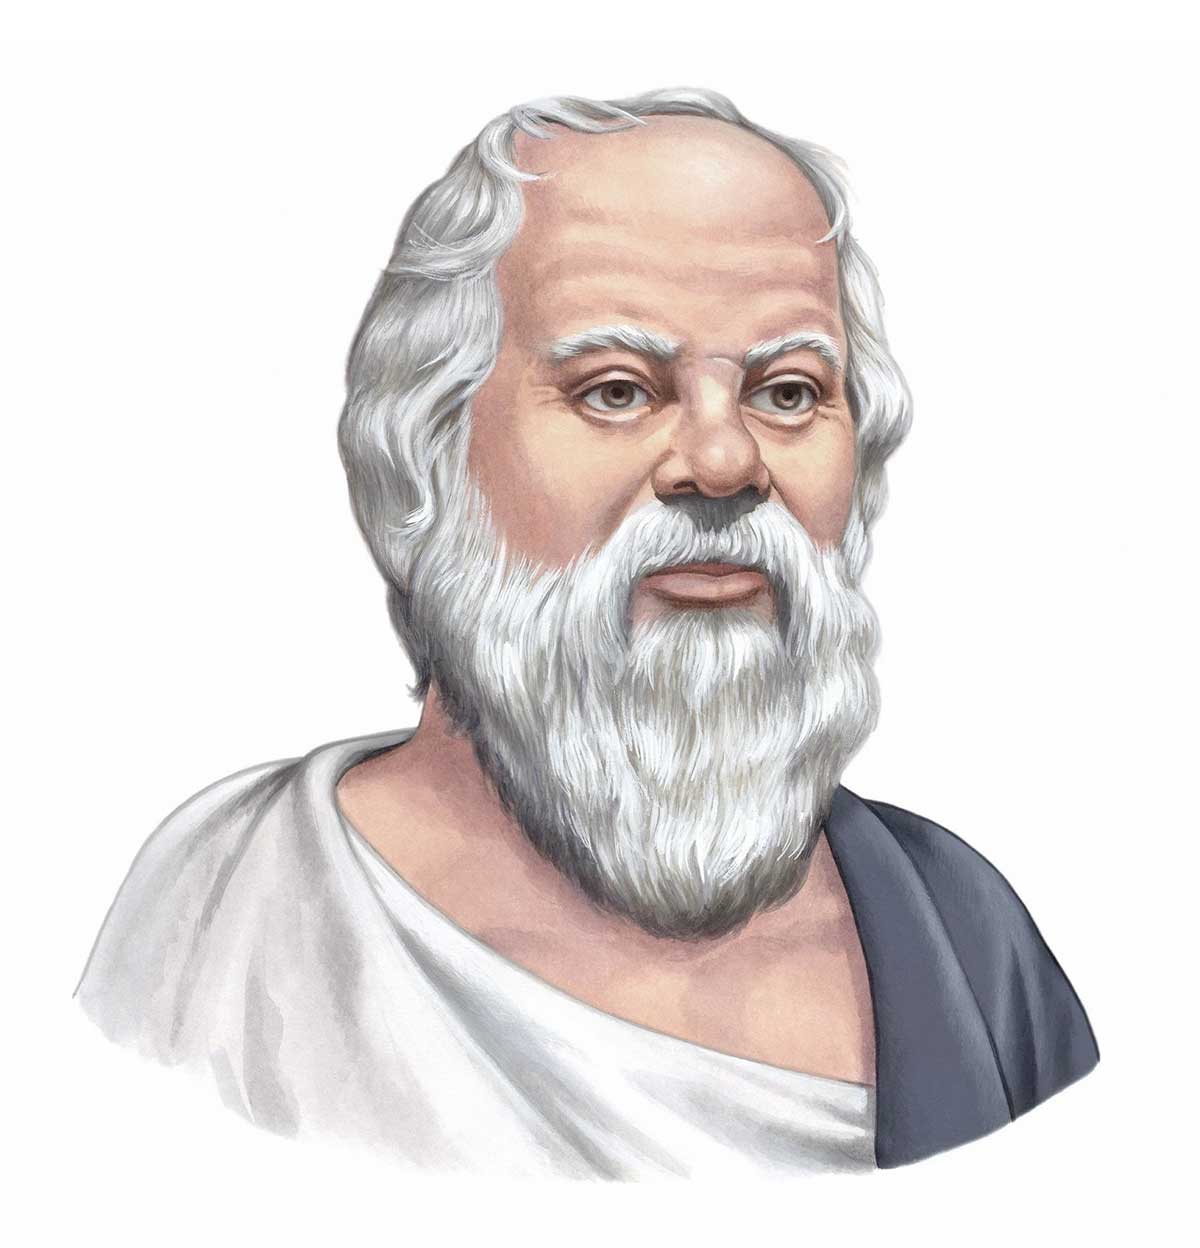 36の名言とエピソードで知る 哲学者ソクラテス 英語と和訳 名言倶楽部